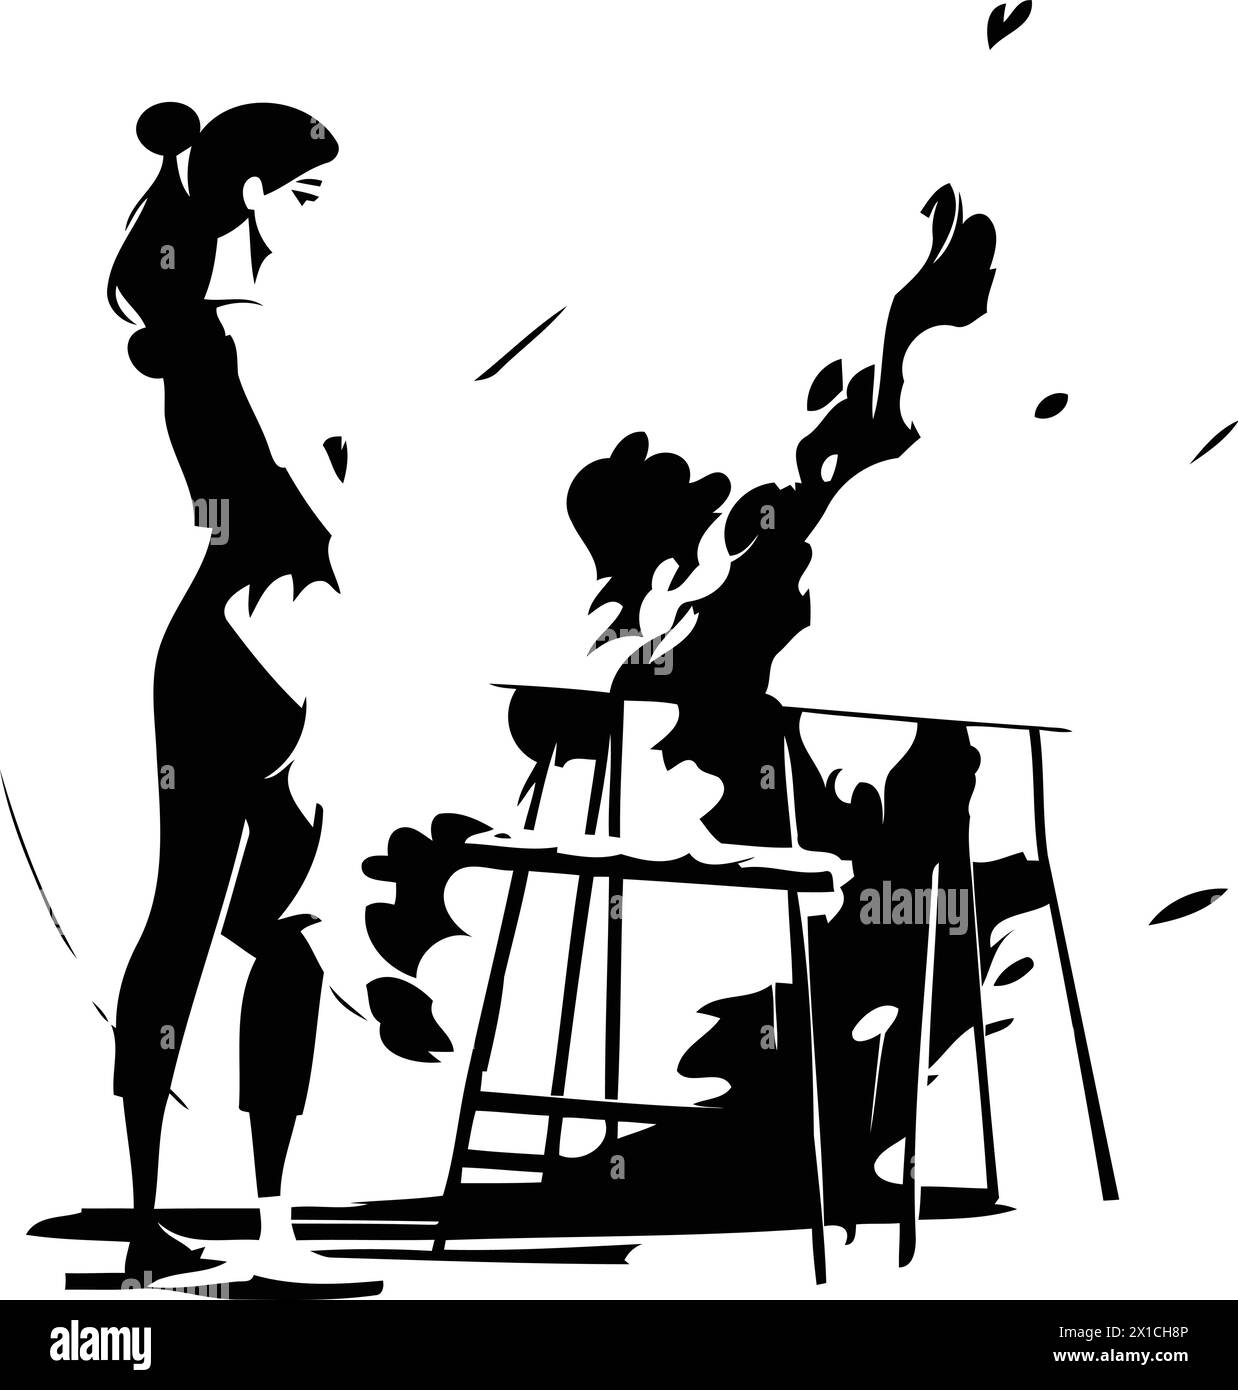 Jeune femme artiste peinture sur toile dans l'illustration vectorielle de studio d'art. Dessin de personnage féminin sur toile avec pinceau et palette. Art et cr Illustration de Vecteur